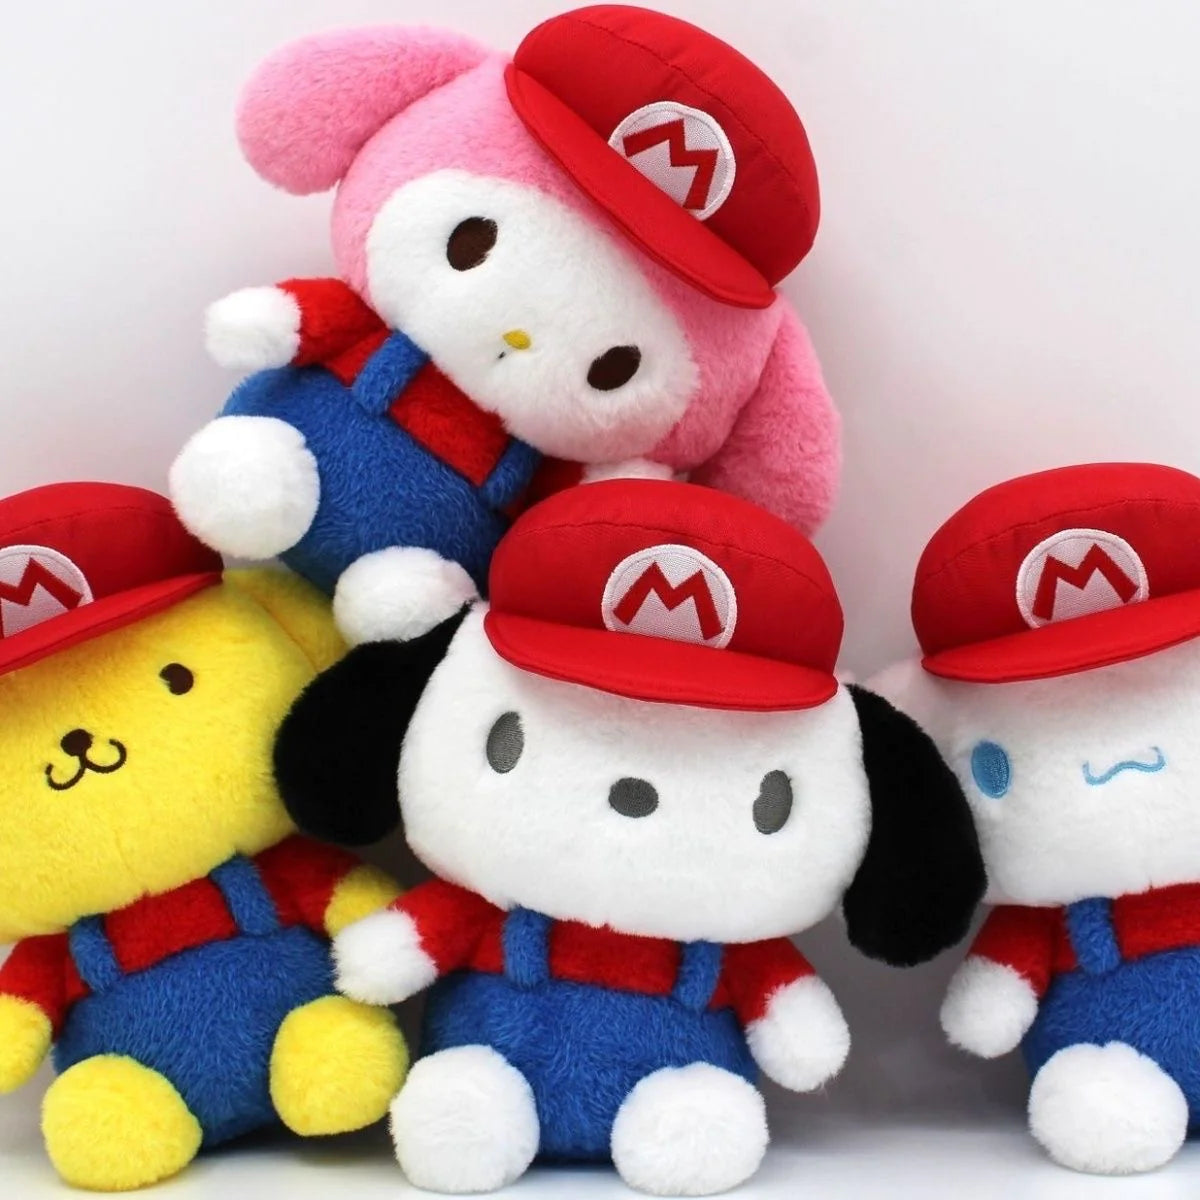 Sanrio Mario Style Plush Toy